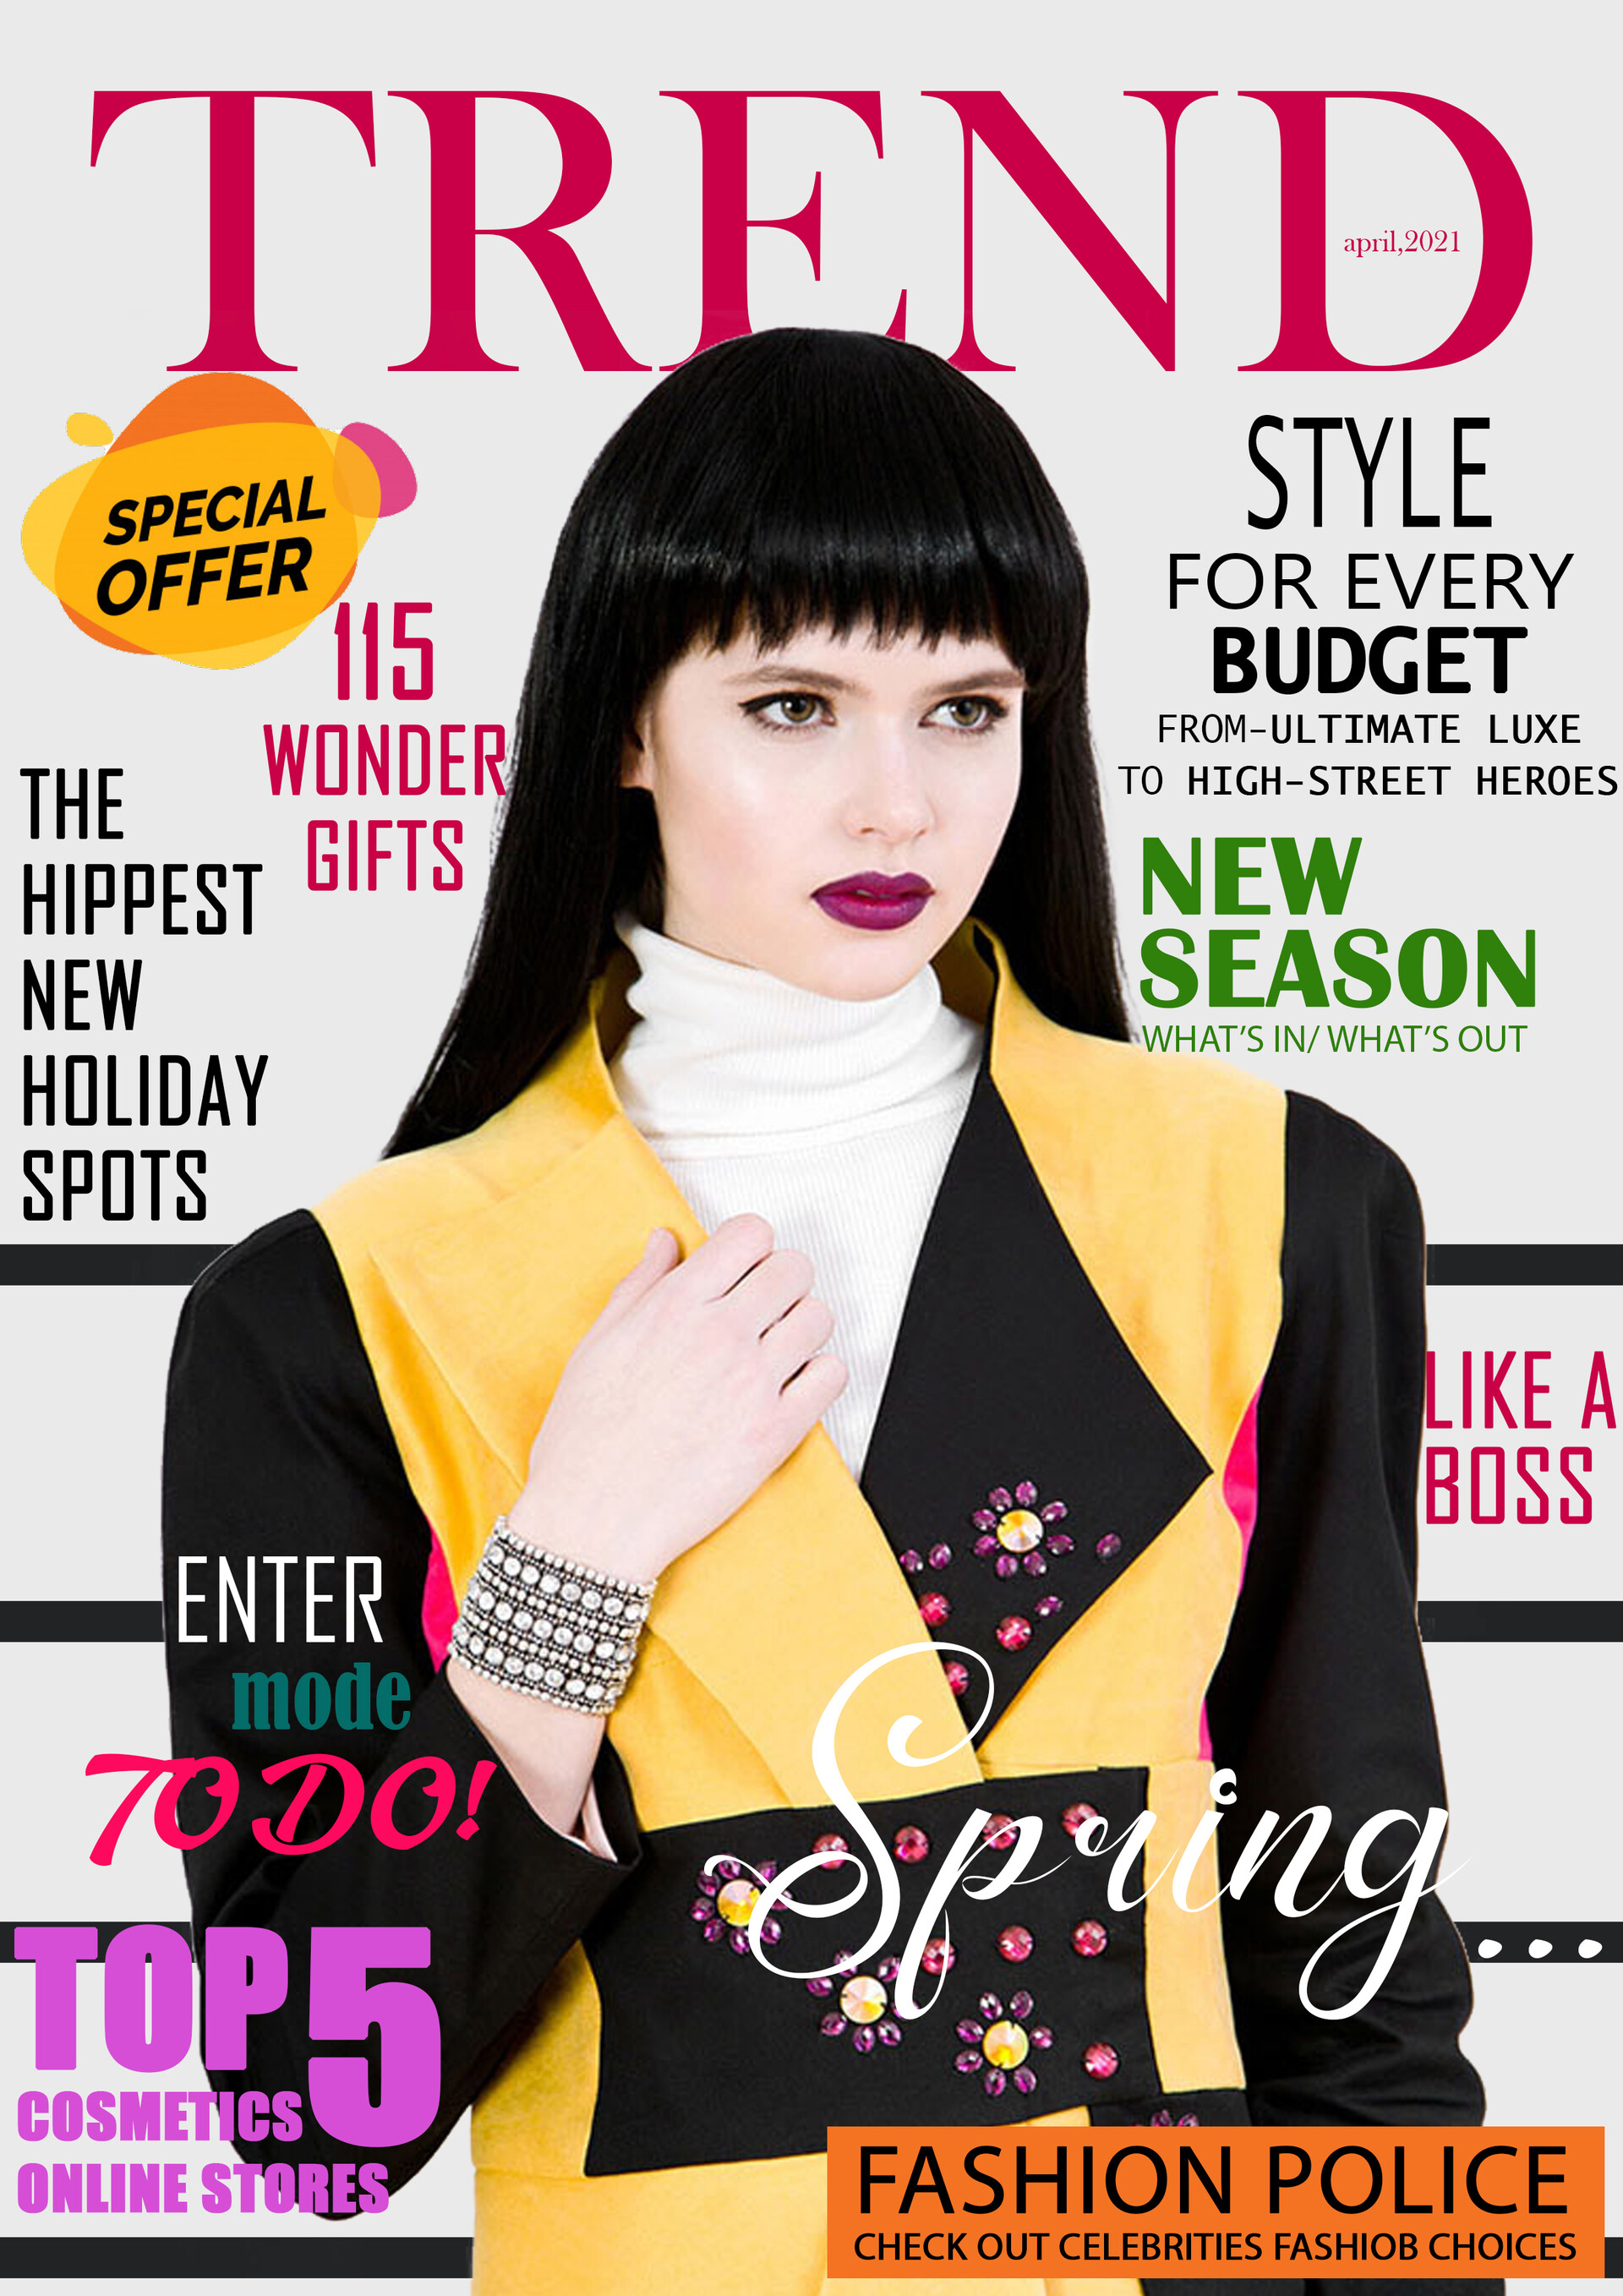 fashion magazine cover page design